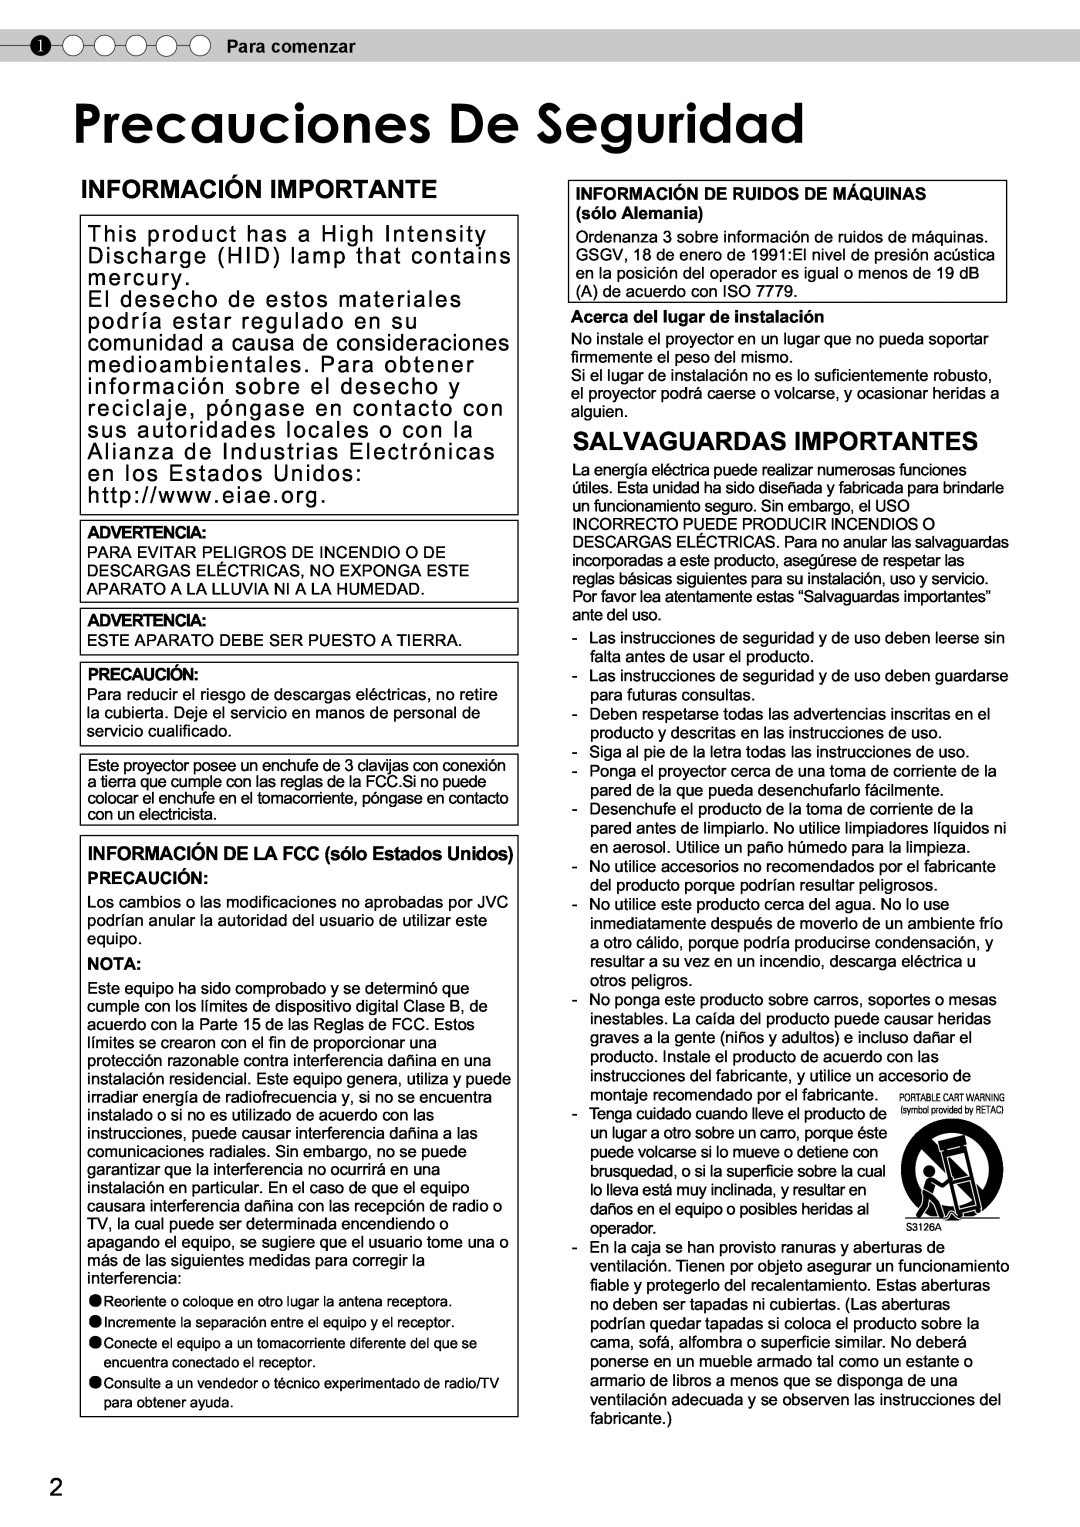 JVC DLA-RS10 Información Importante, Salvaguardas Importantes, Precaucionesr uciones DeDeSeguridadSeguridad, Advertencia 